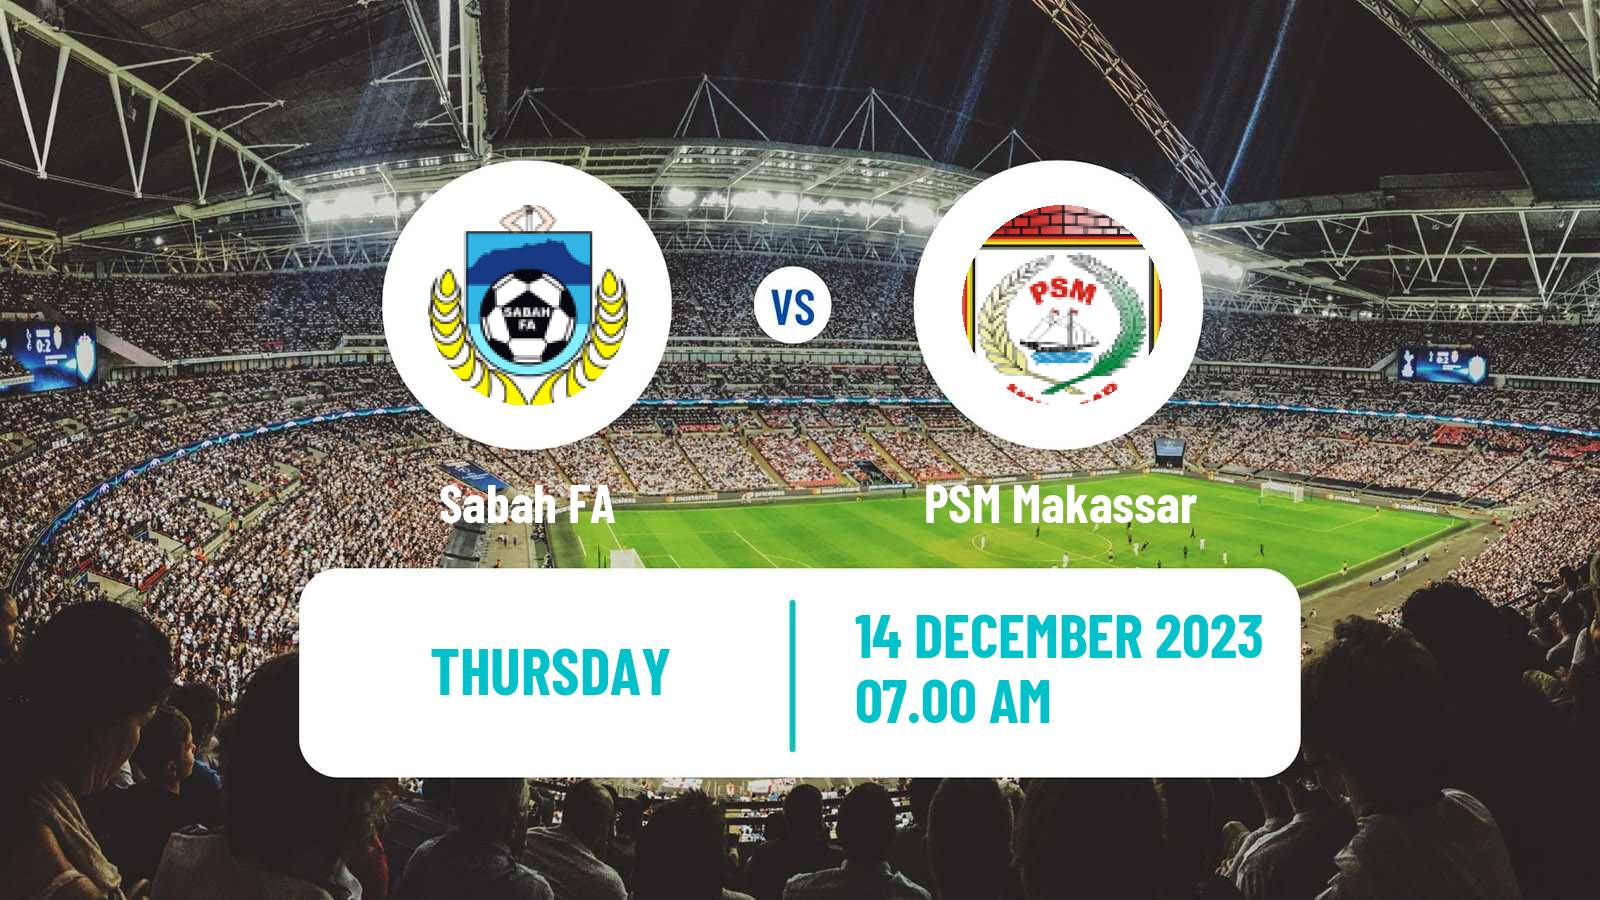 Soccer AFC Cup Sabah FA - PSM Makassar